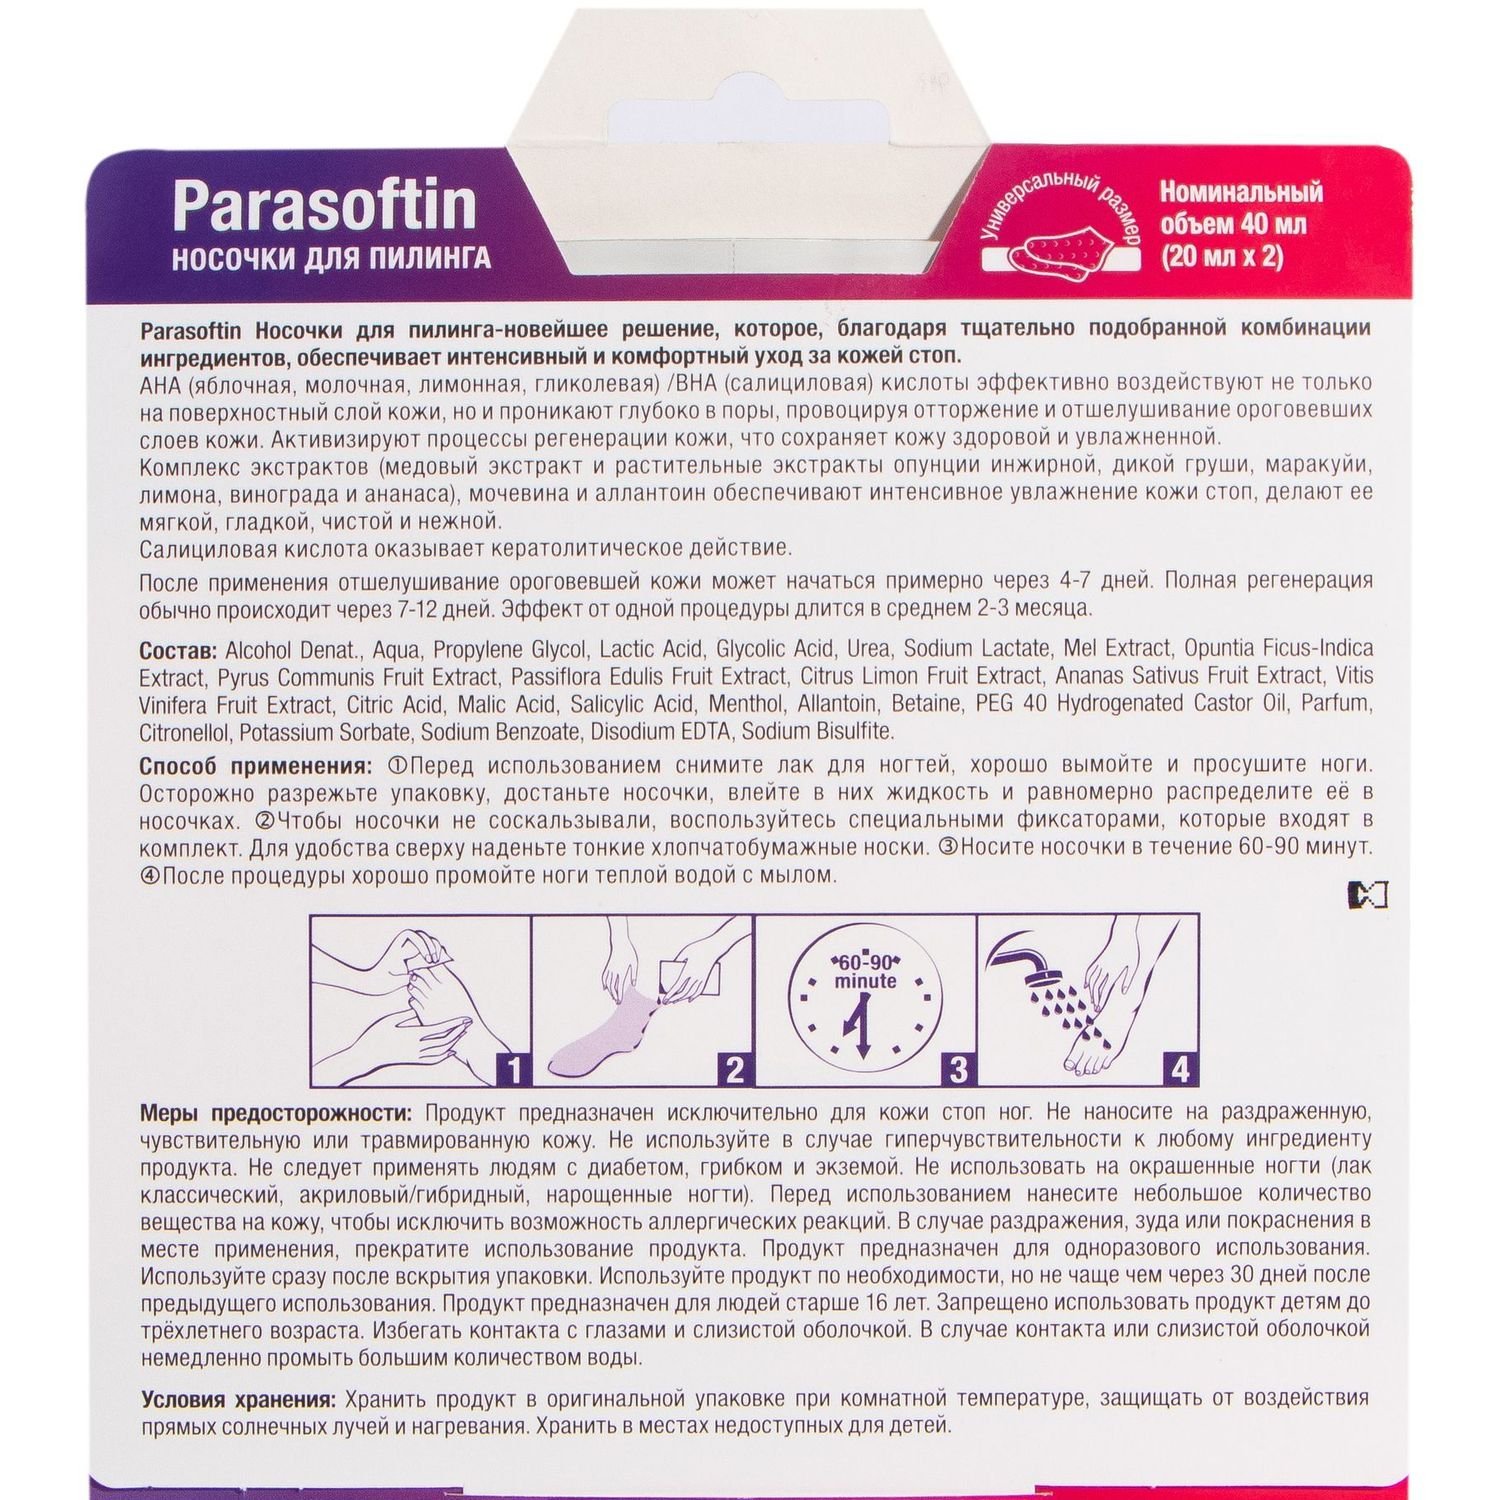 Набор Parasoftin: Средство для пилинга кожи Parasoftin, 2 шт. + Носки Parasoftin, 1 шт. - фото 2